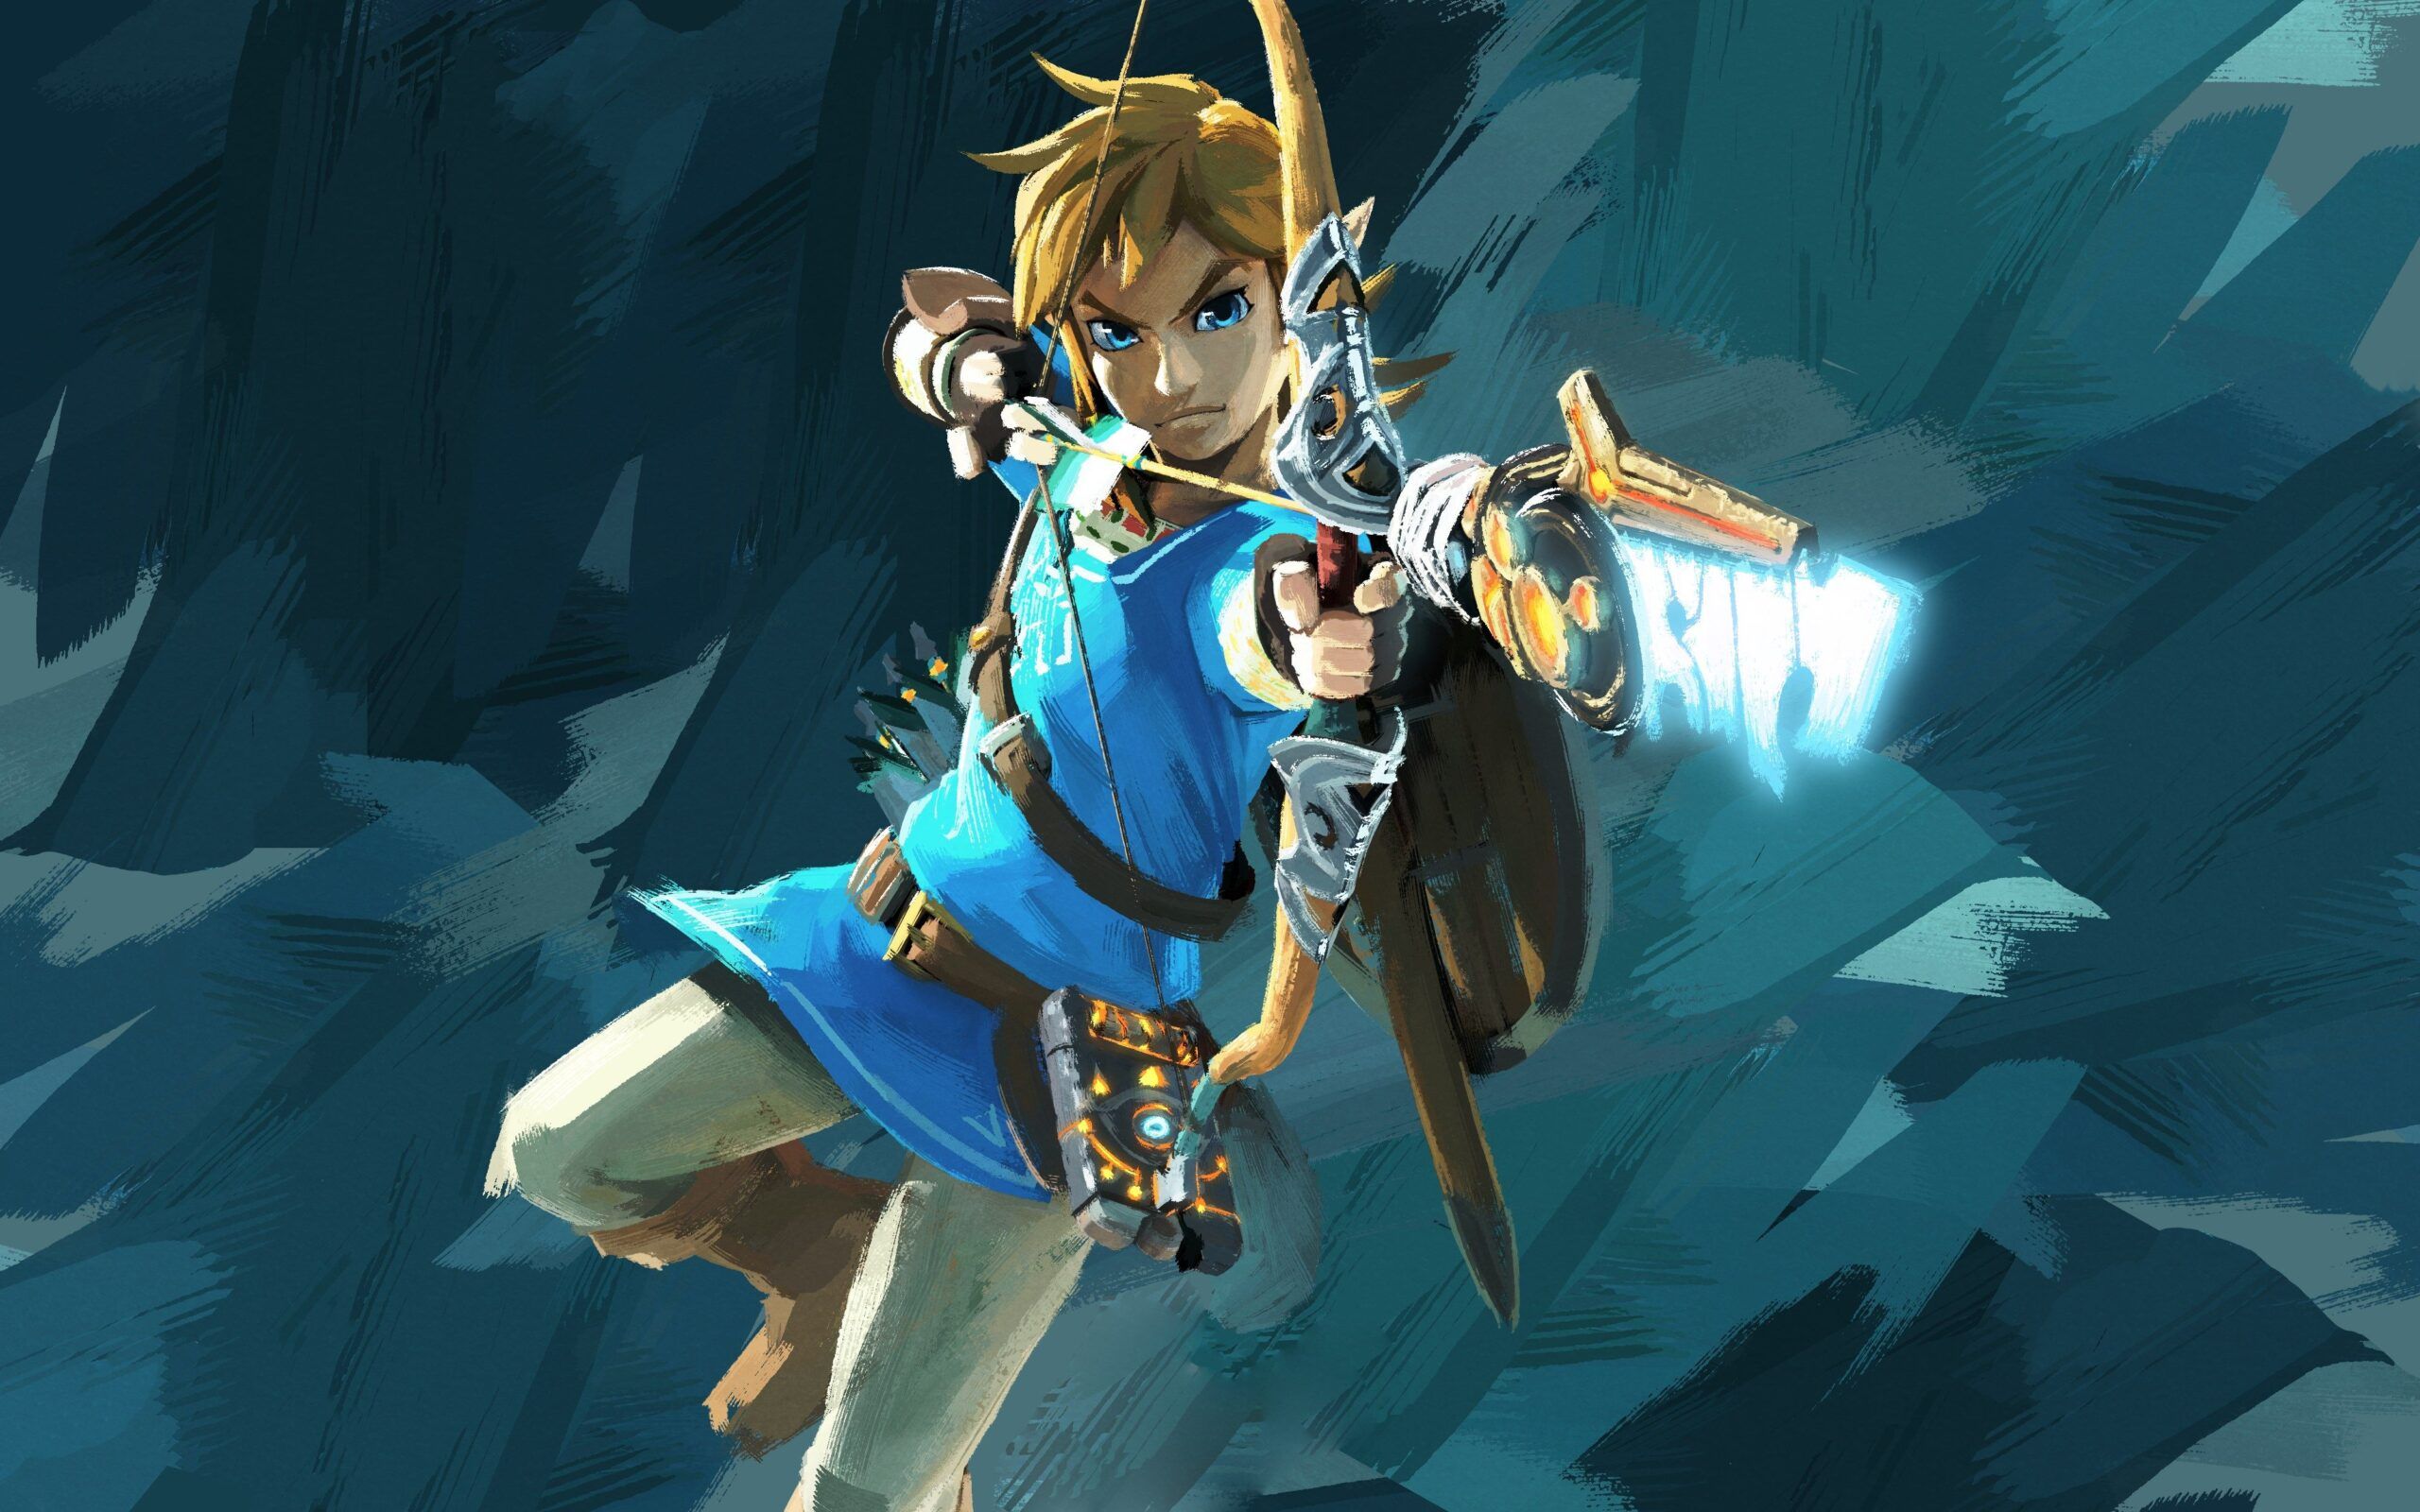 Reportes indican que Nintendo y Universal están negociando para realizar una película de The Legend of Zelda